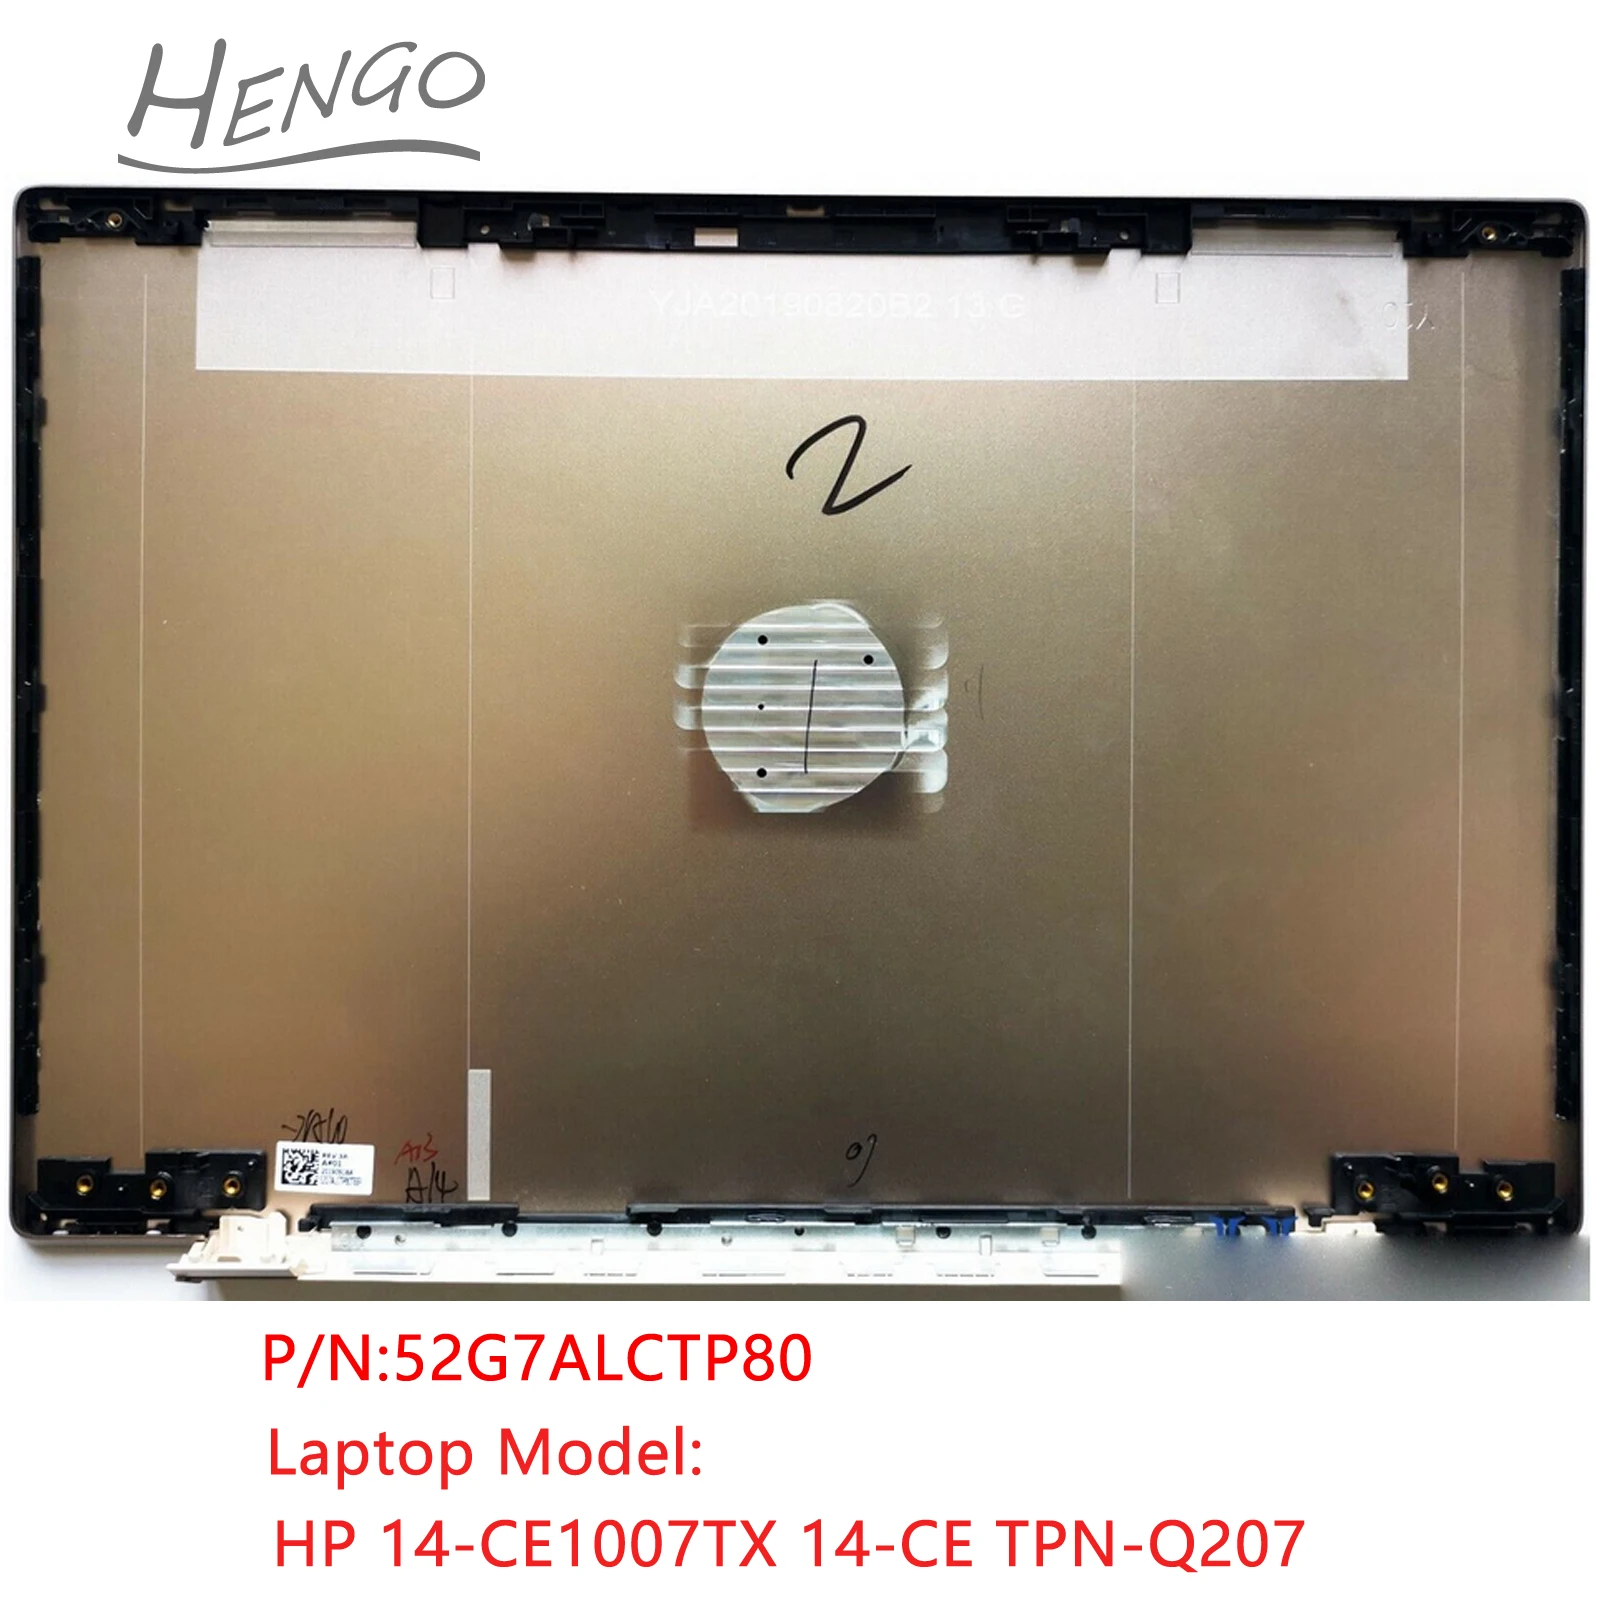 52G7ALCTP80 Gold Оригинал Для HP 14-CE1007TX 14-CE TPN-Q207 ЖК-дисплей С задней крышкой, Верхняя Задняя крышка Изображение 0